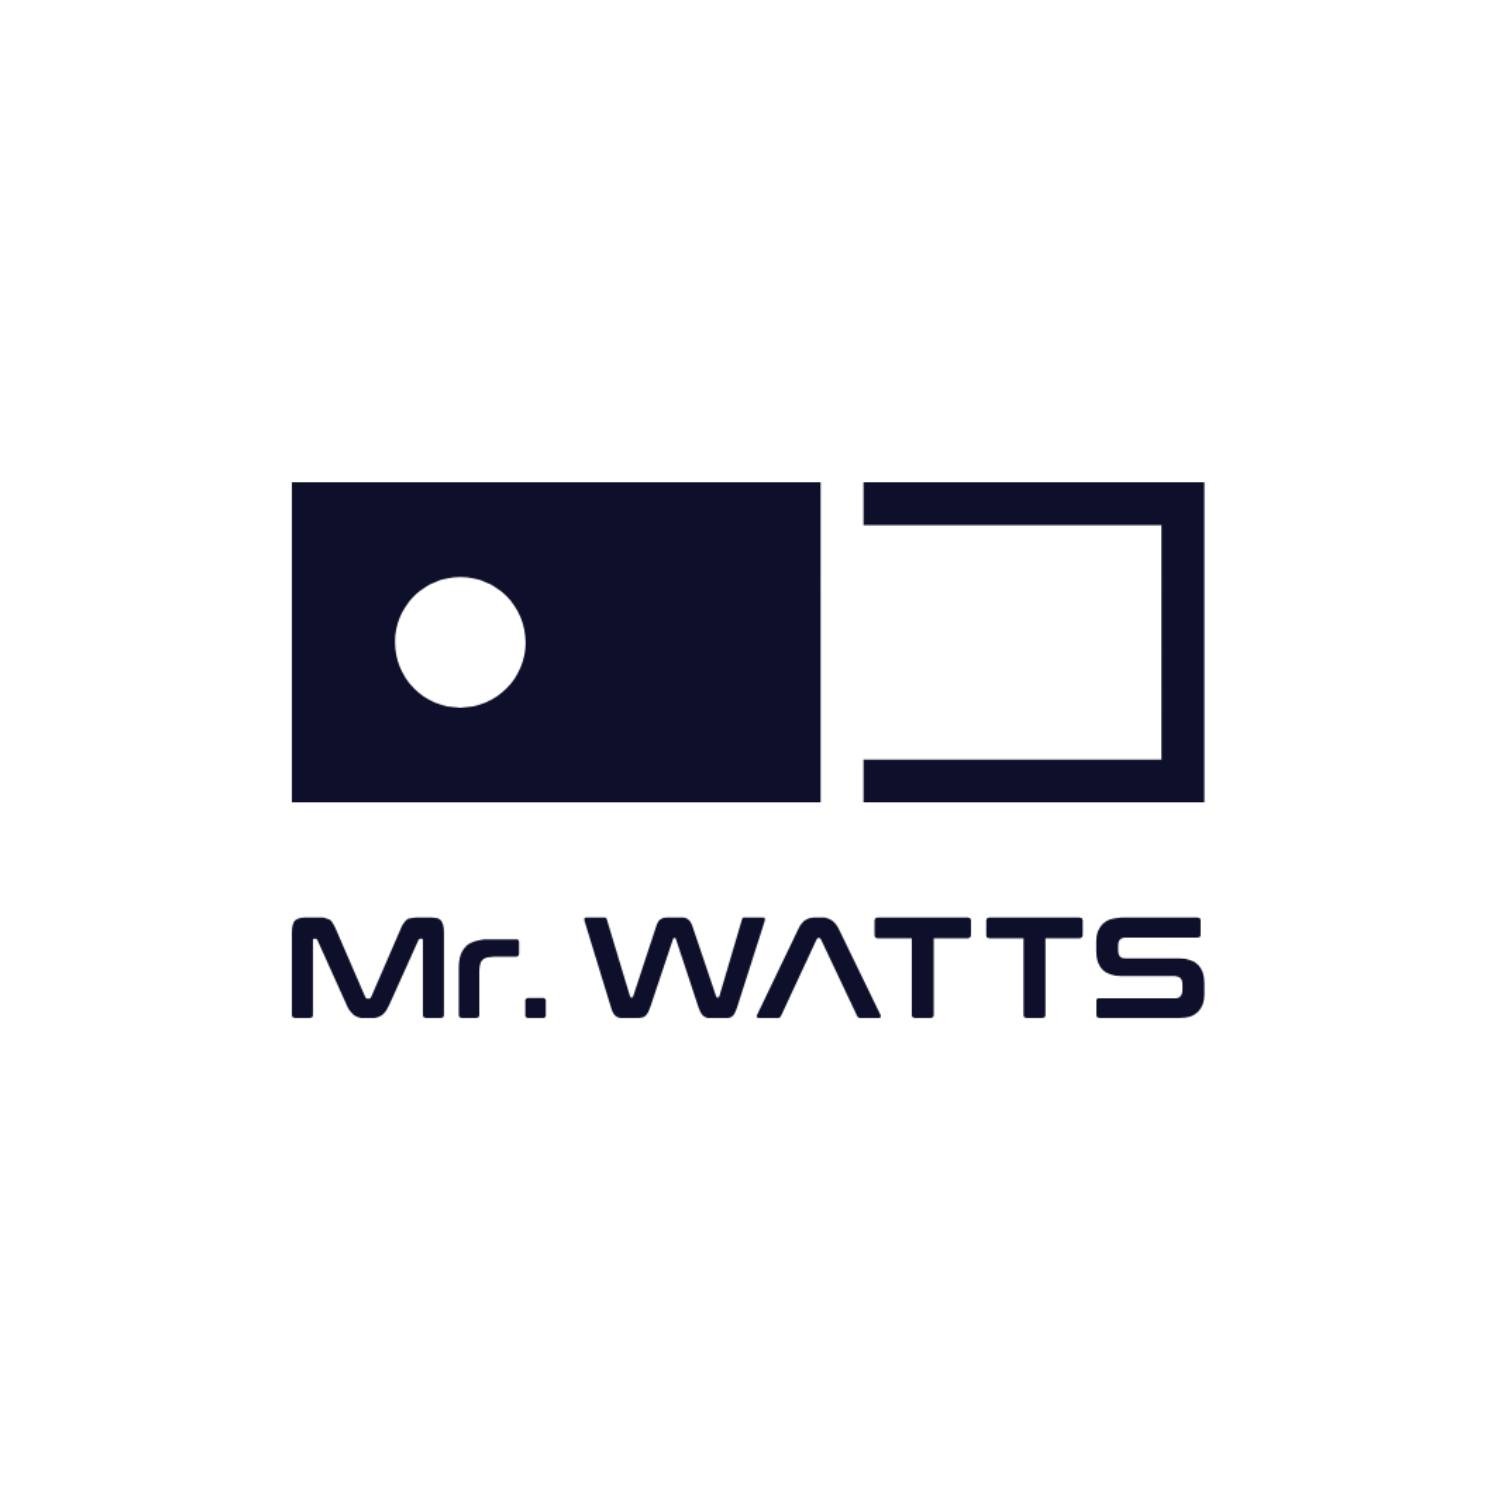 Mr. Watts